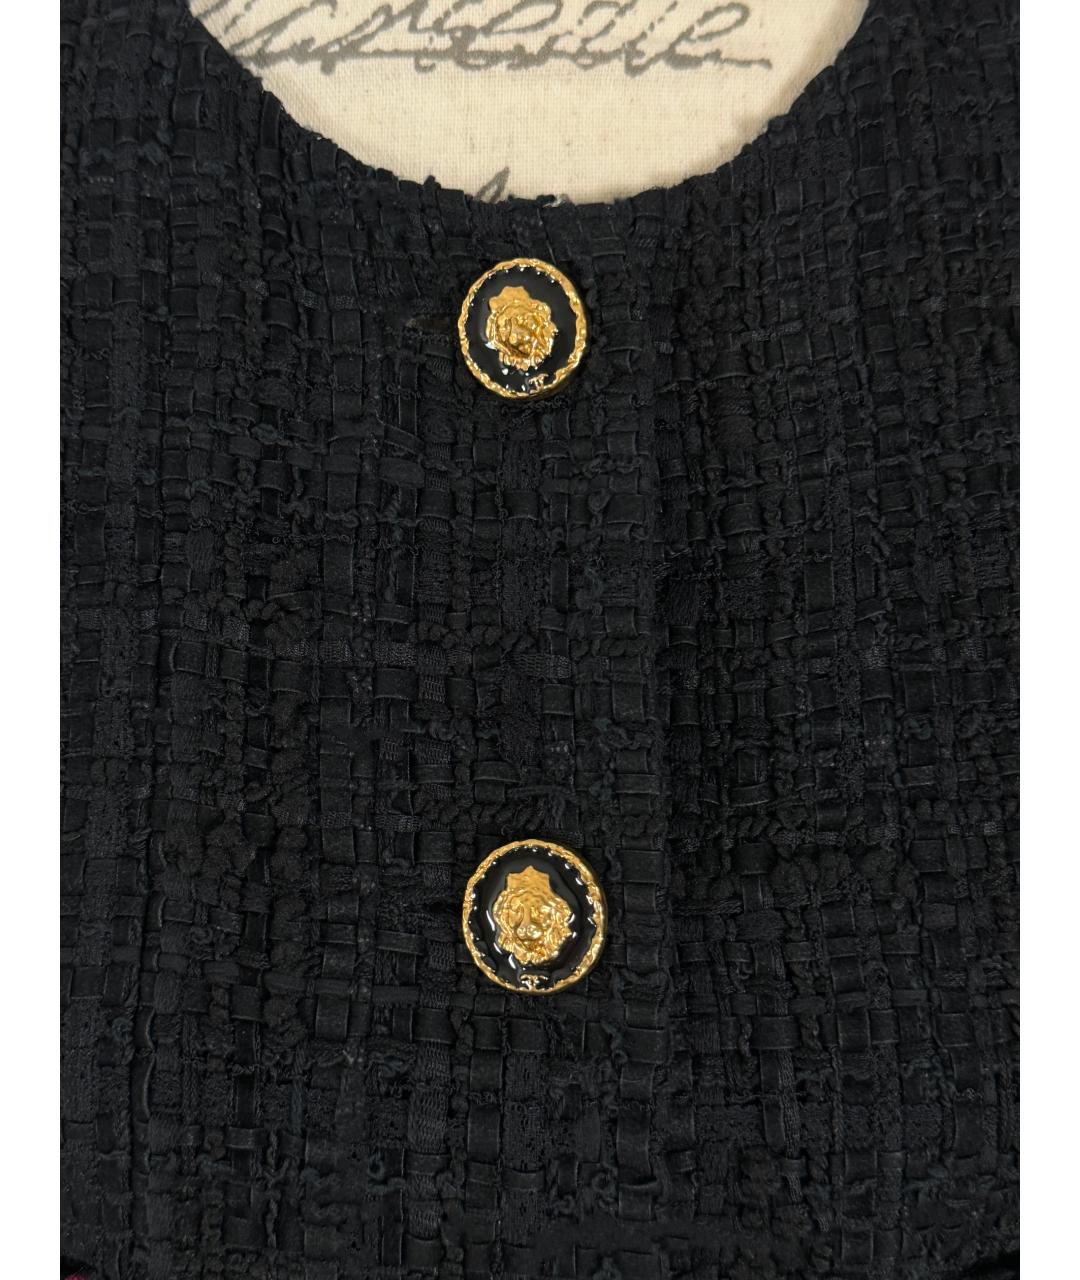 CHANEL PRE-OWNED Черный твидовый жакет/пиджак, фото 9